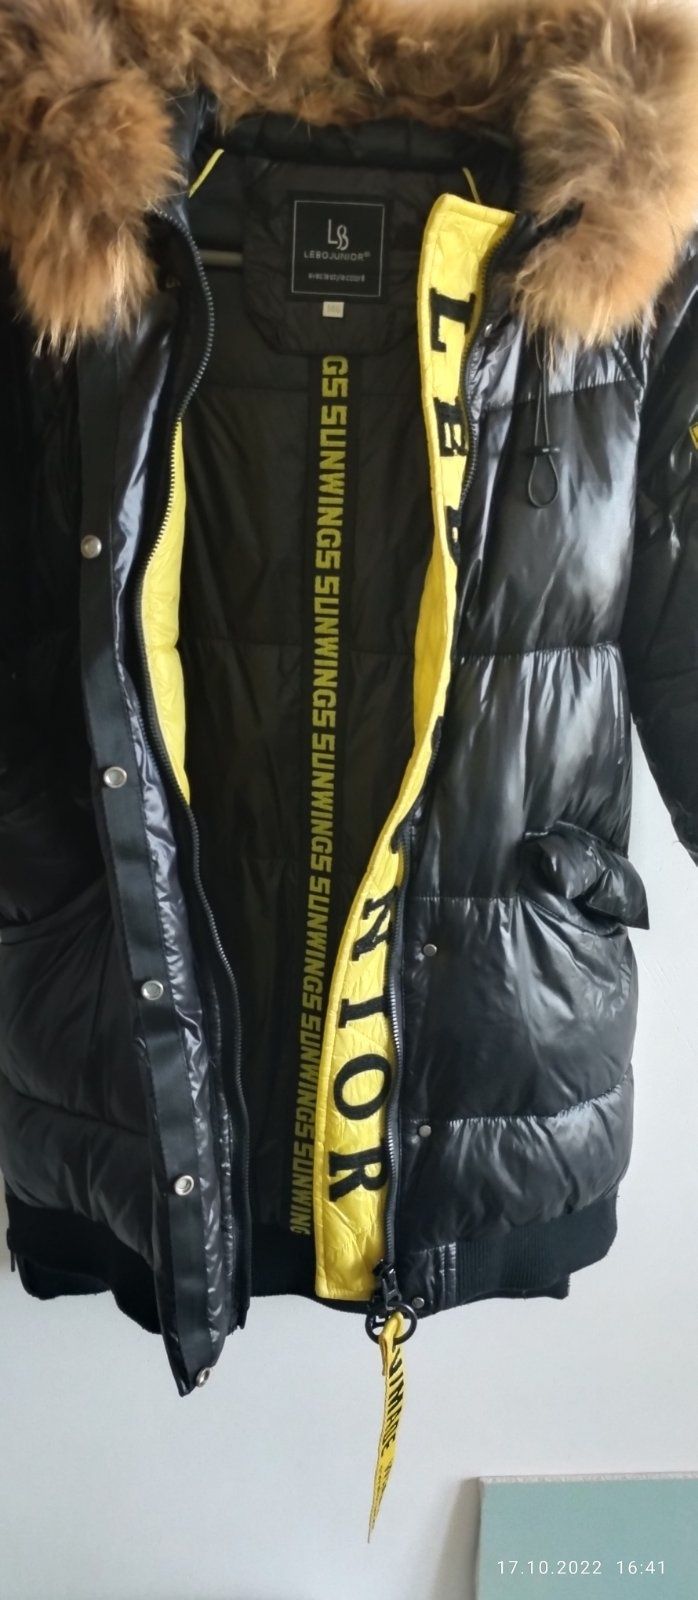 Фирменная куртка состояние новой покупалась за 2950 грн